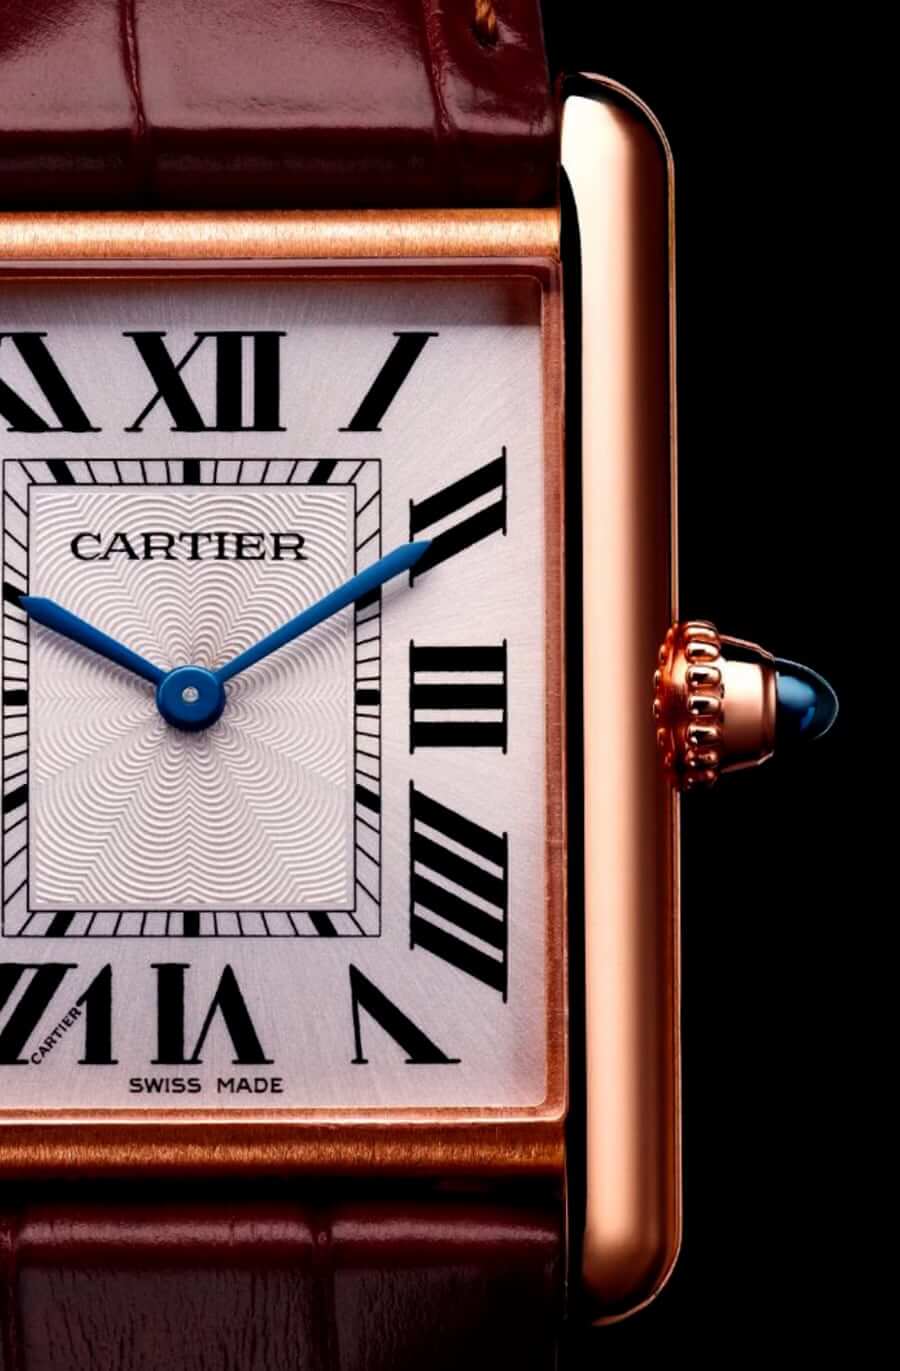 18k Gold Cartier Tank watch close-up